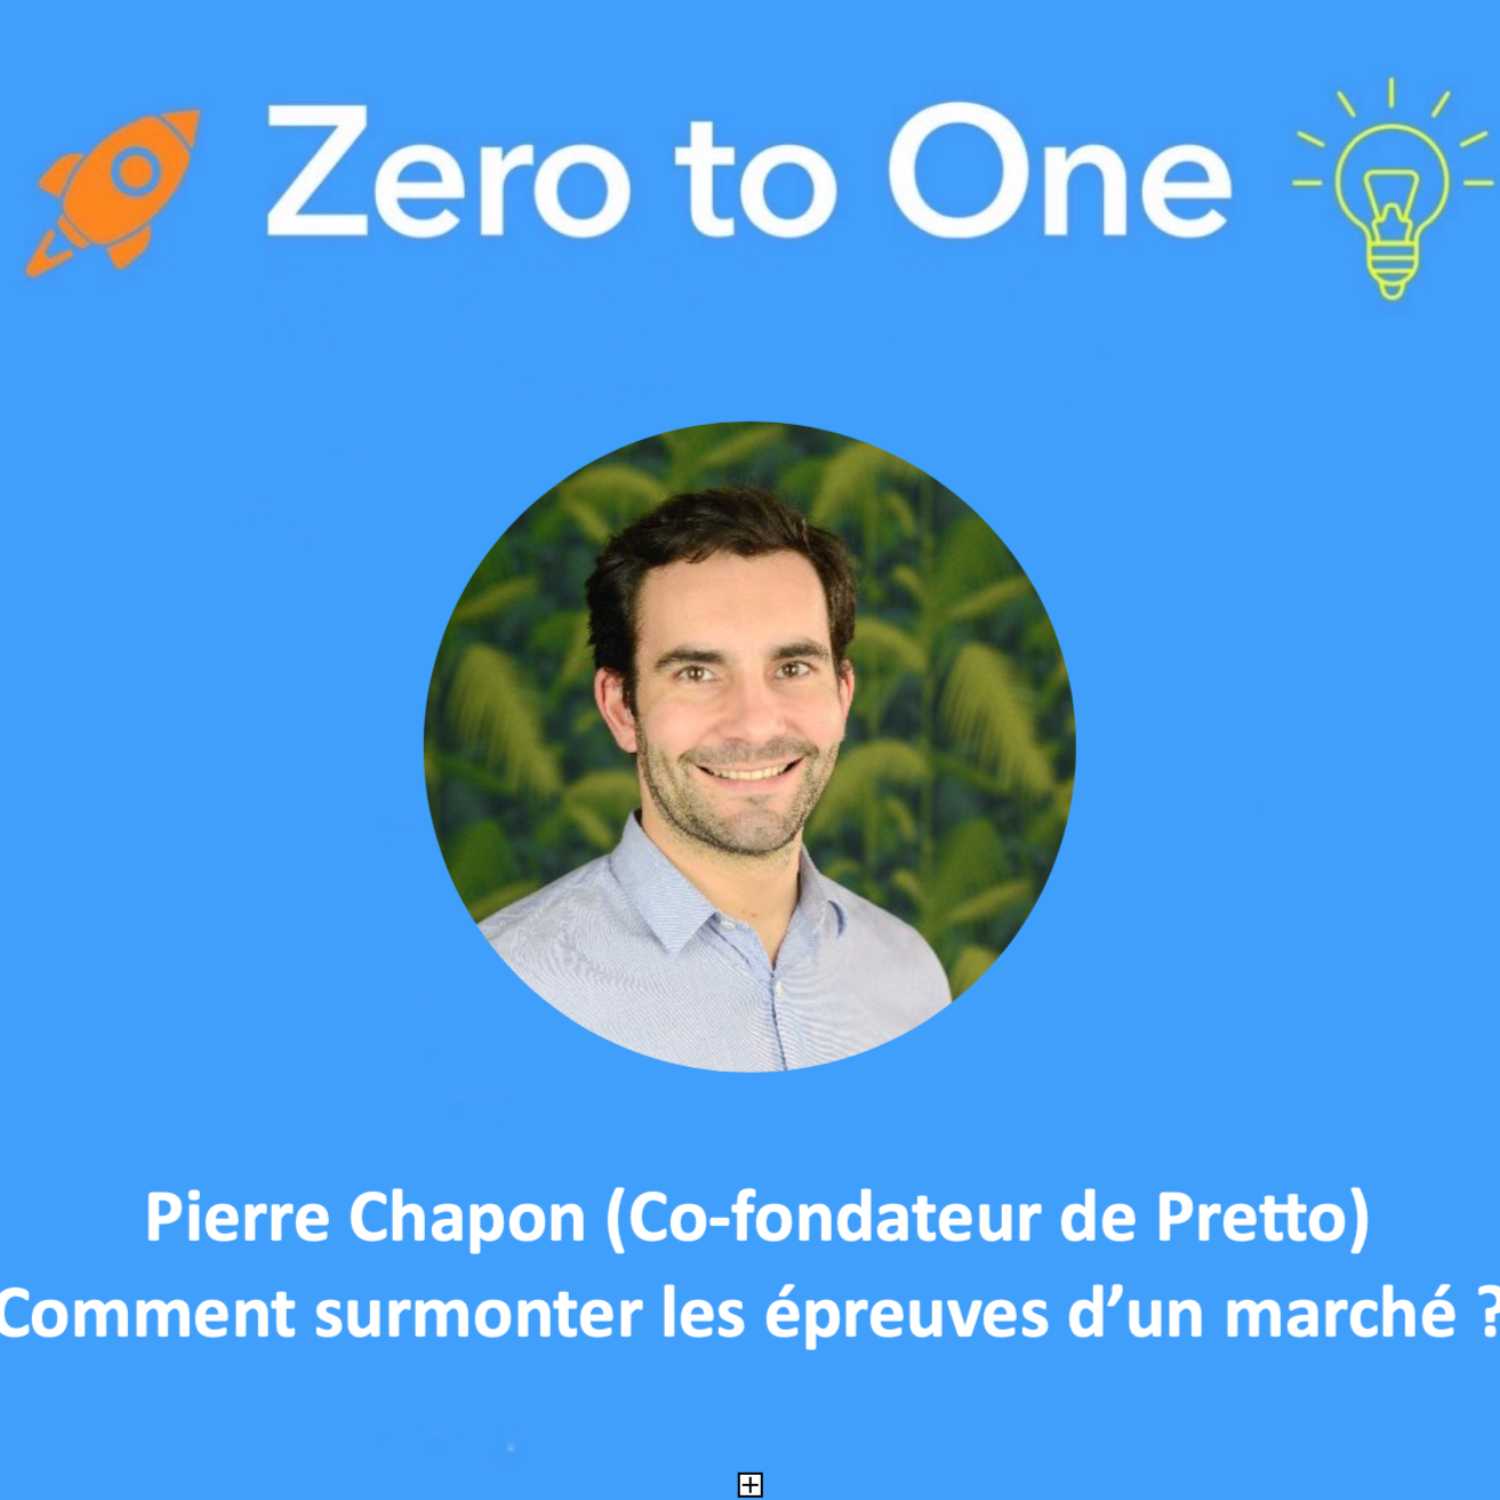 Pierre Chapon (Co-fondateur de Pretto): Comment surmonter les épreuves d’un marché ? 💪🏼